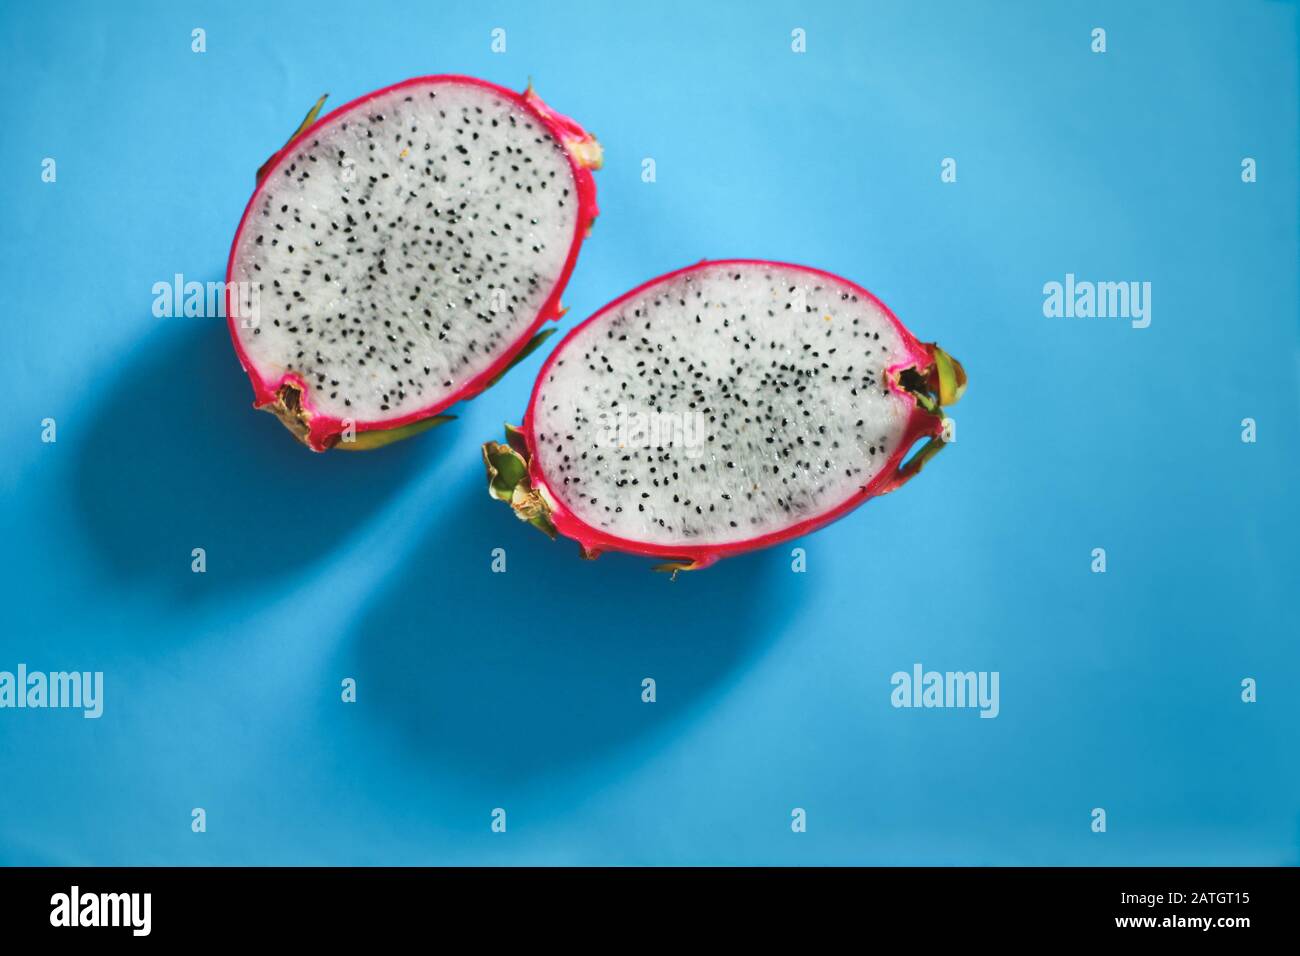 Fruta de libélula fresca cortada en rodajas o pitaya sobre un fondo azul brillante para mostrar contraste de colores, concepto de diversión, verano y cultura pop Foto de stock